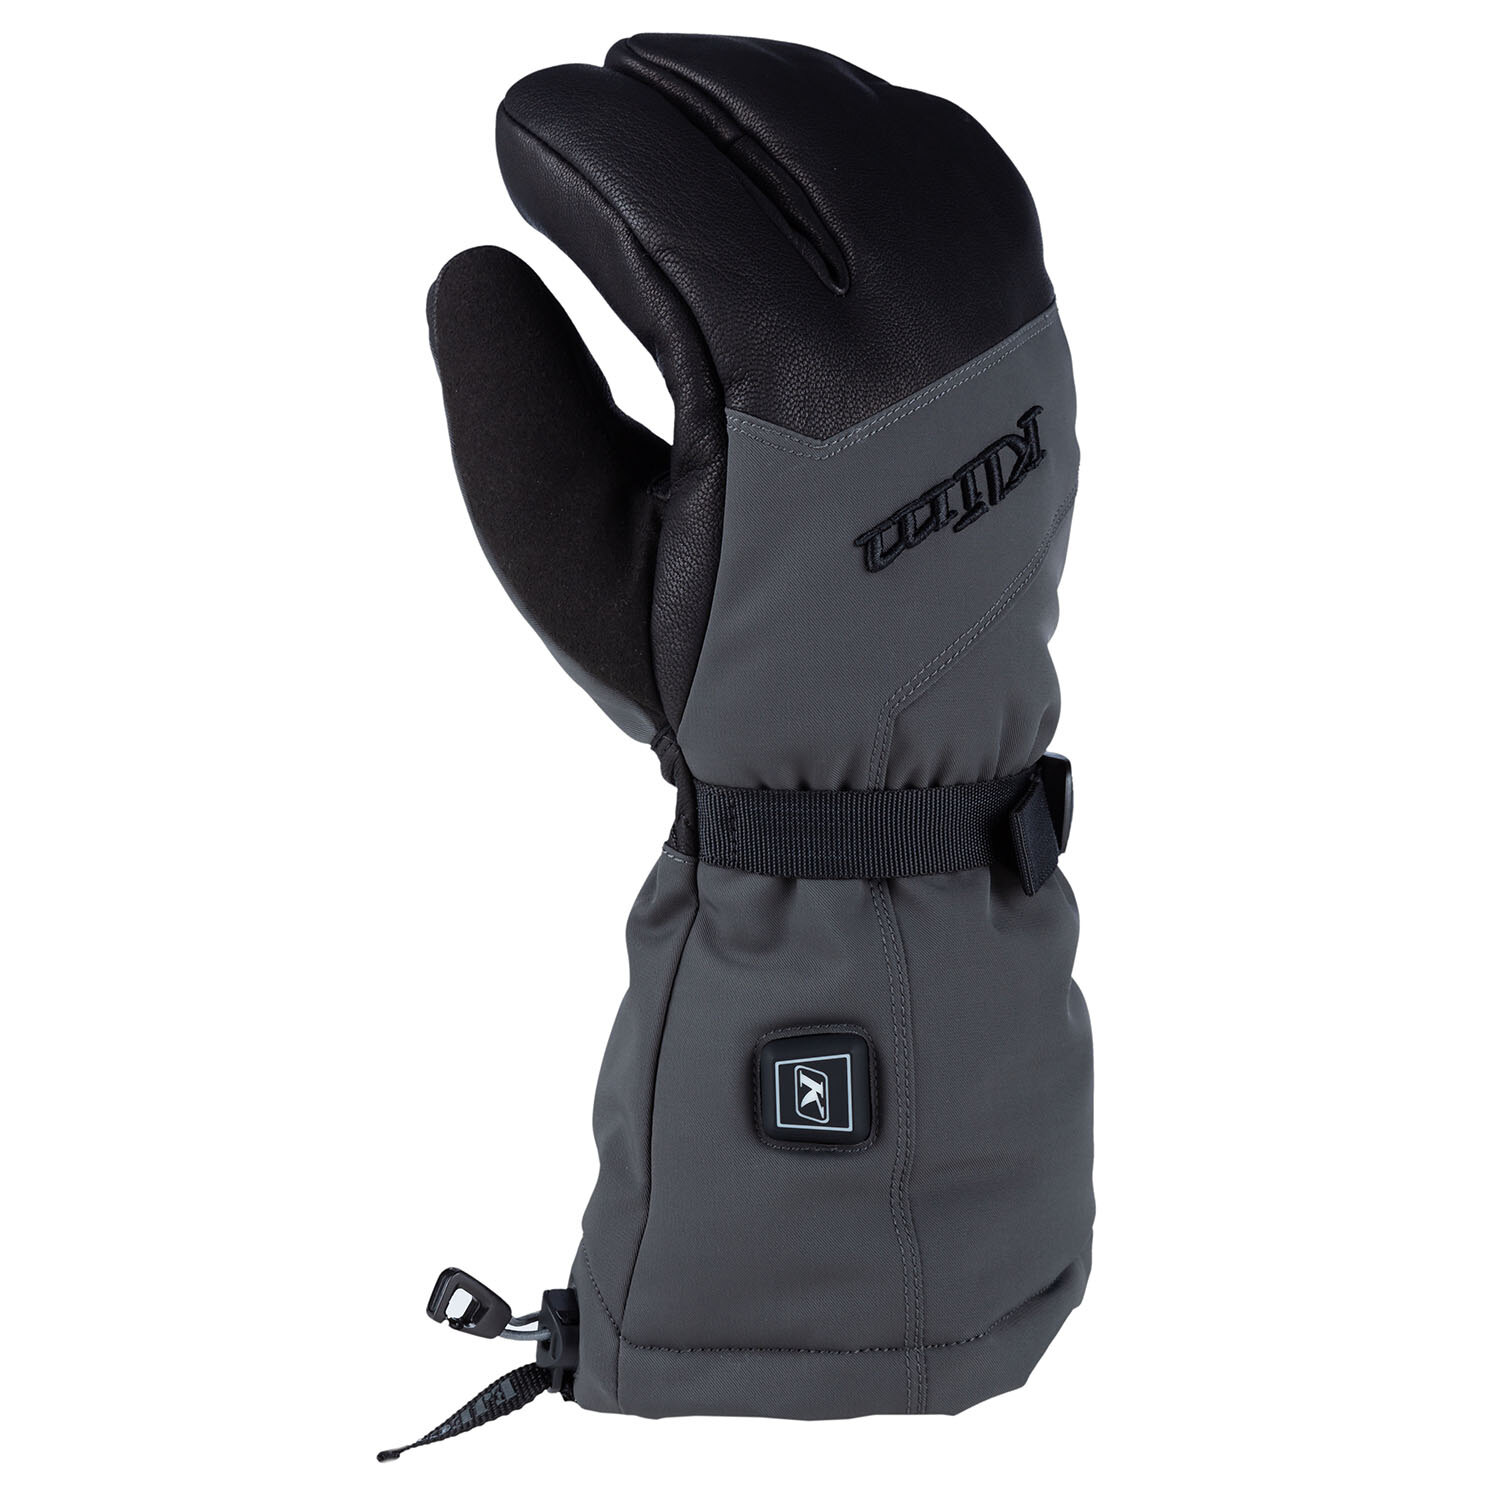 Tundra HTD Gauntlet Glove XS Black Asphalt